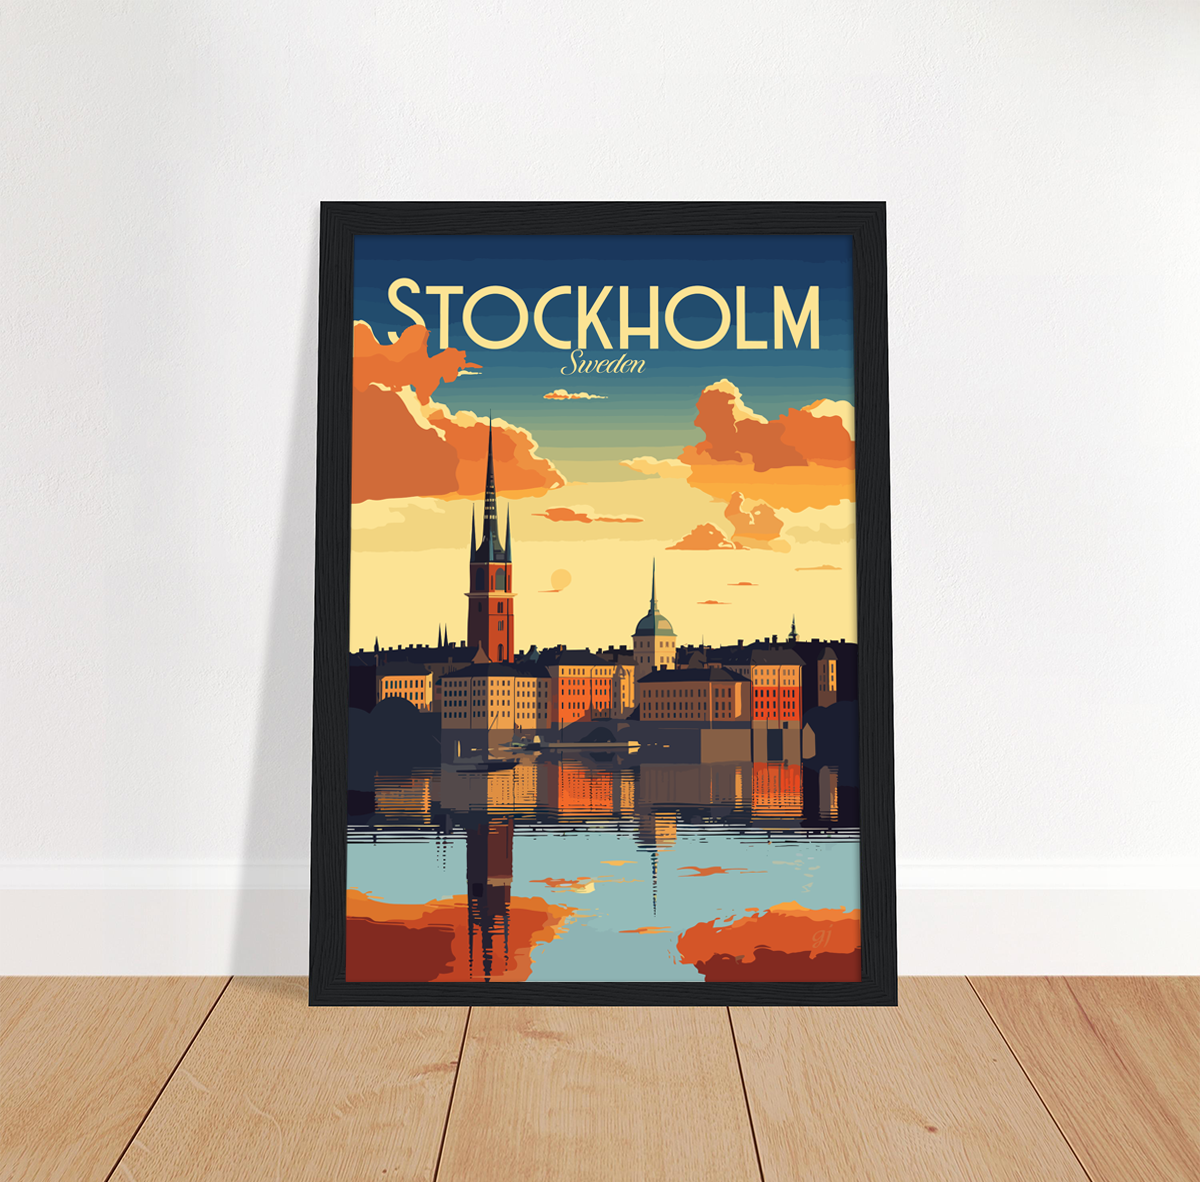 Stockholm poster by bon voyage design